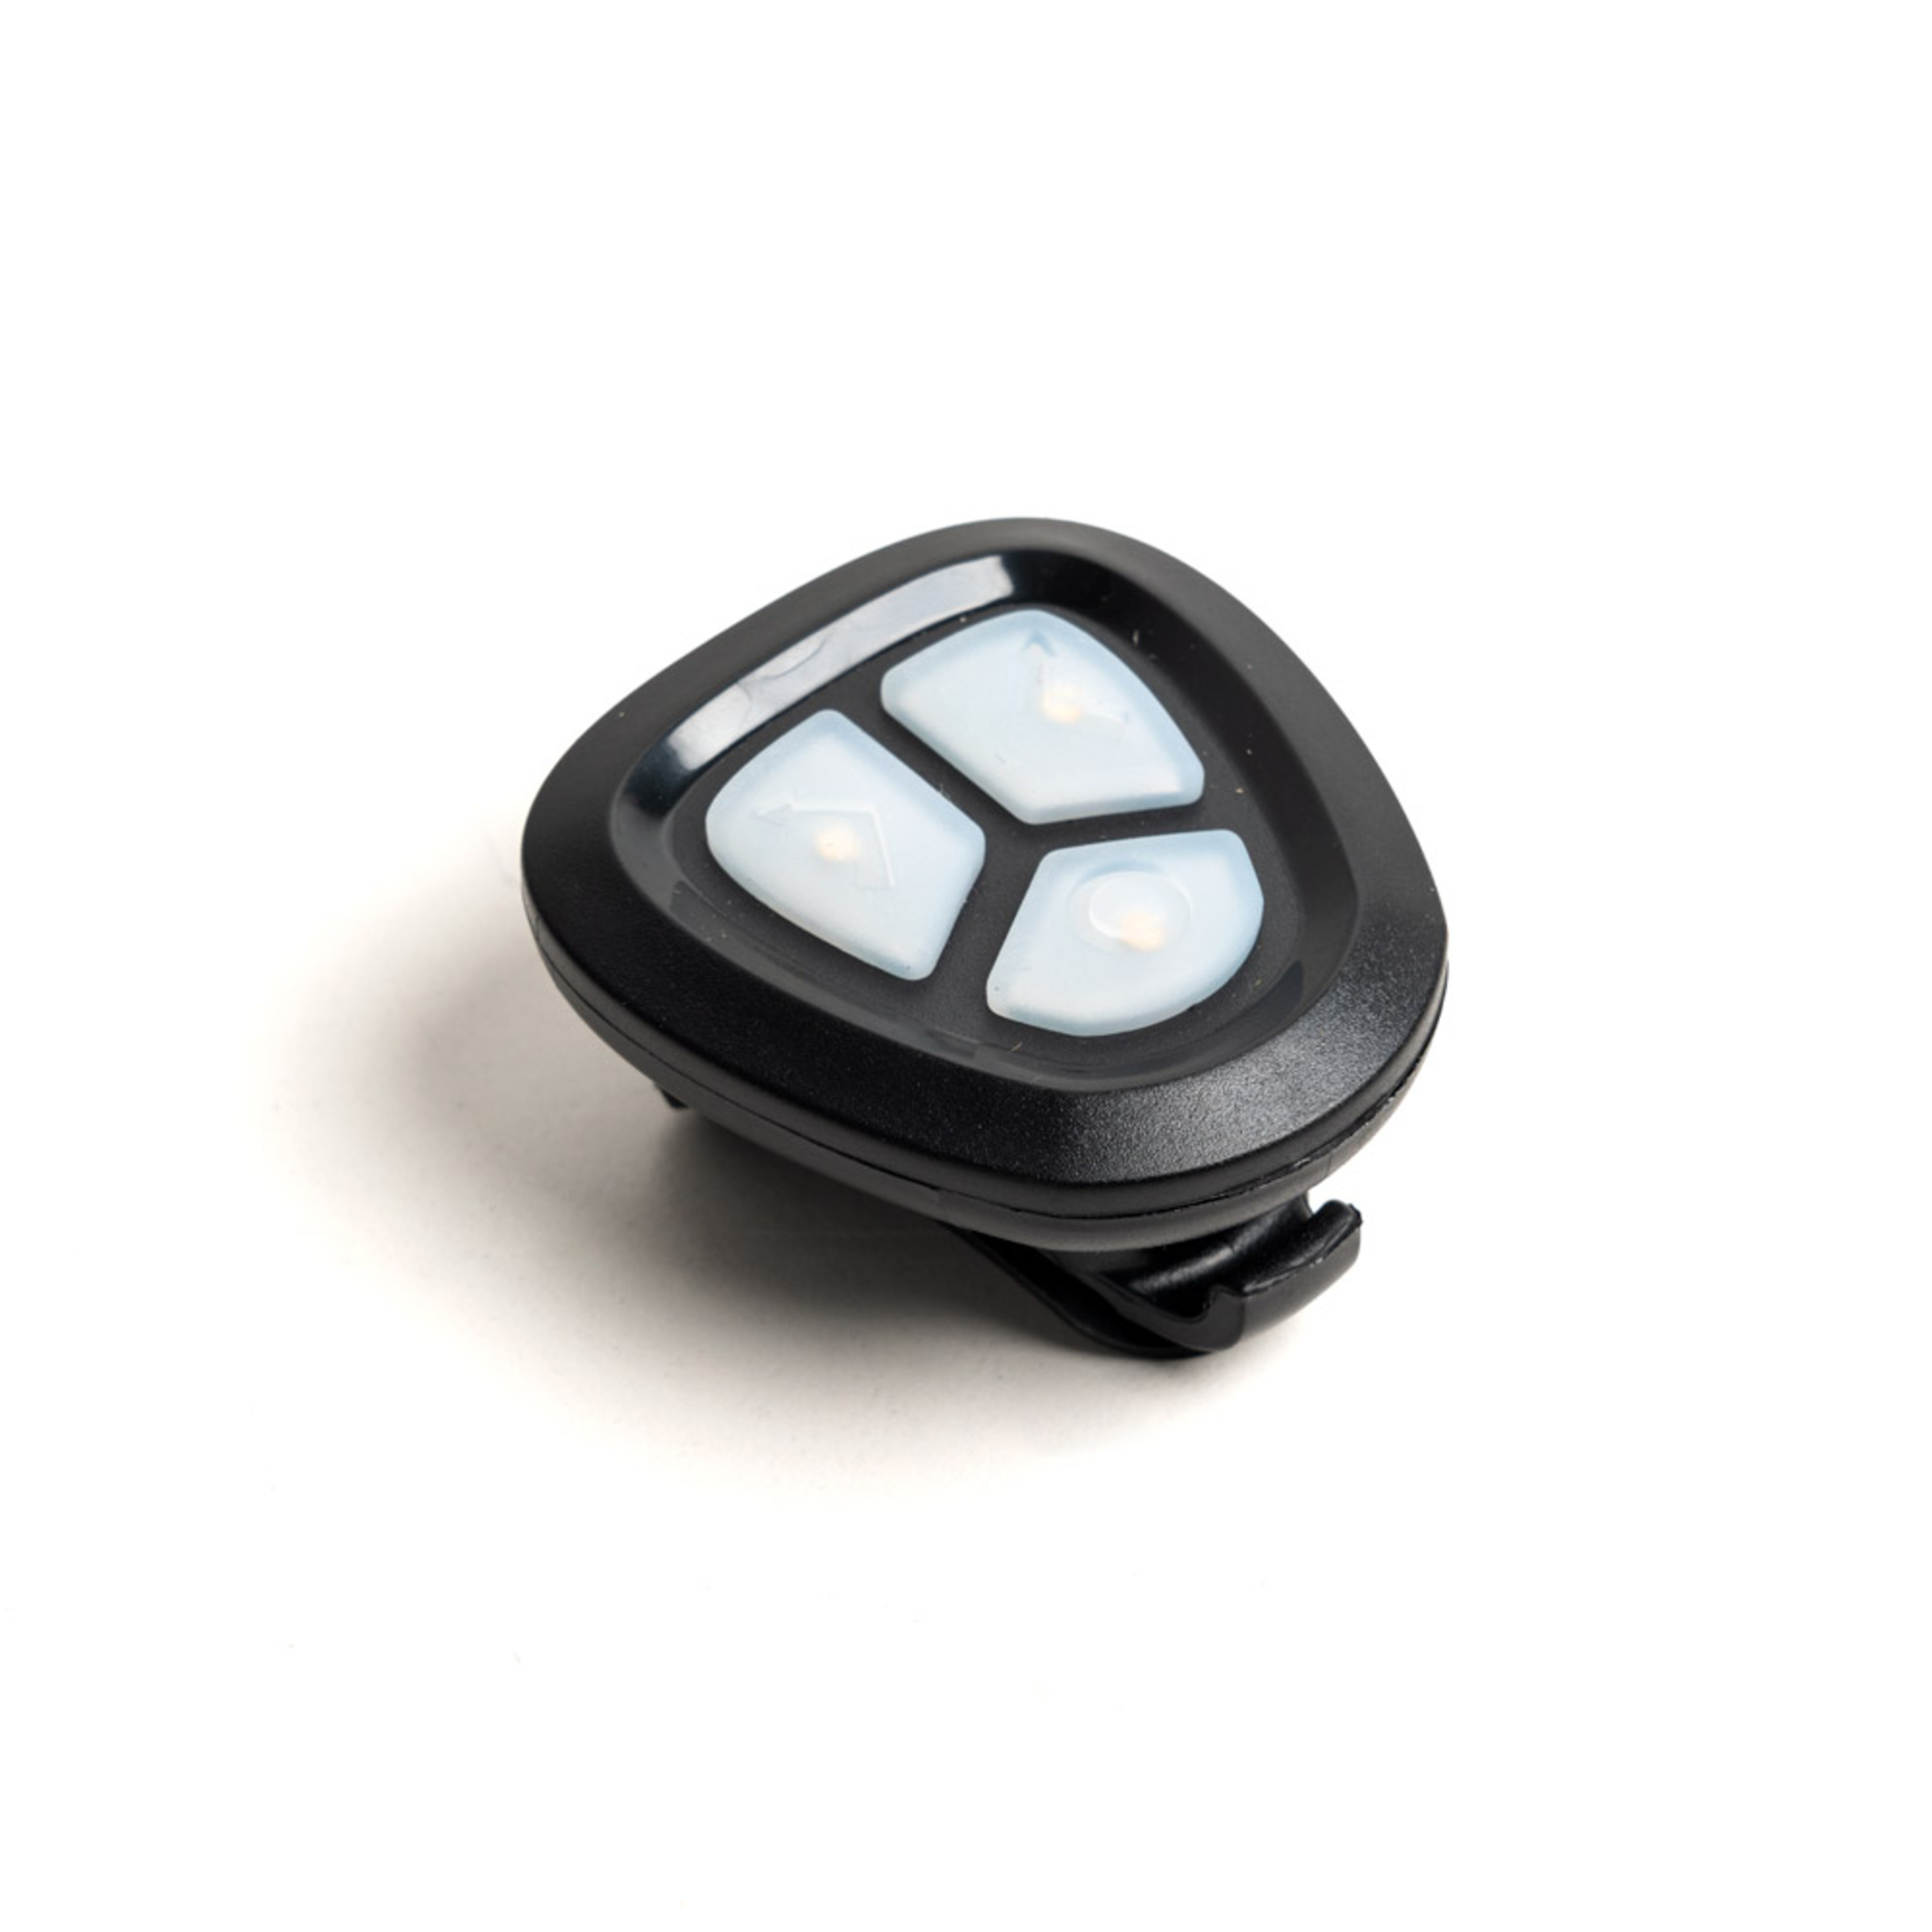 Casco Inteligente Youin Con Luces Led Intermitentes, Homologado Con Control Por Mando Bluetooth